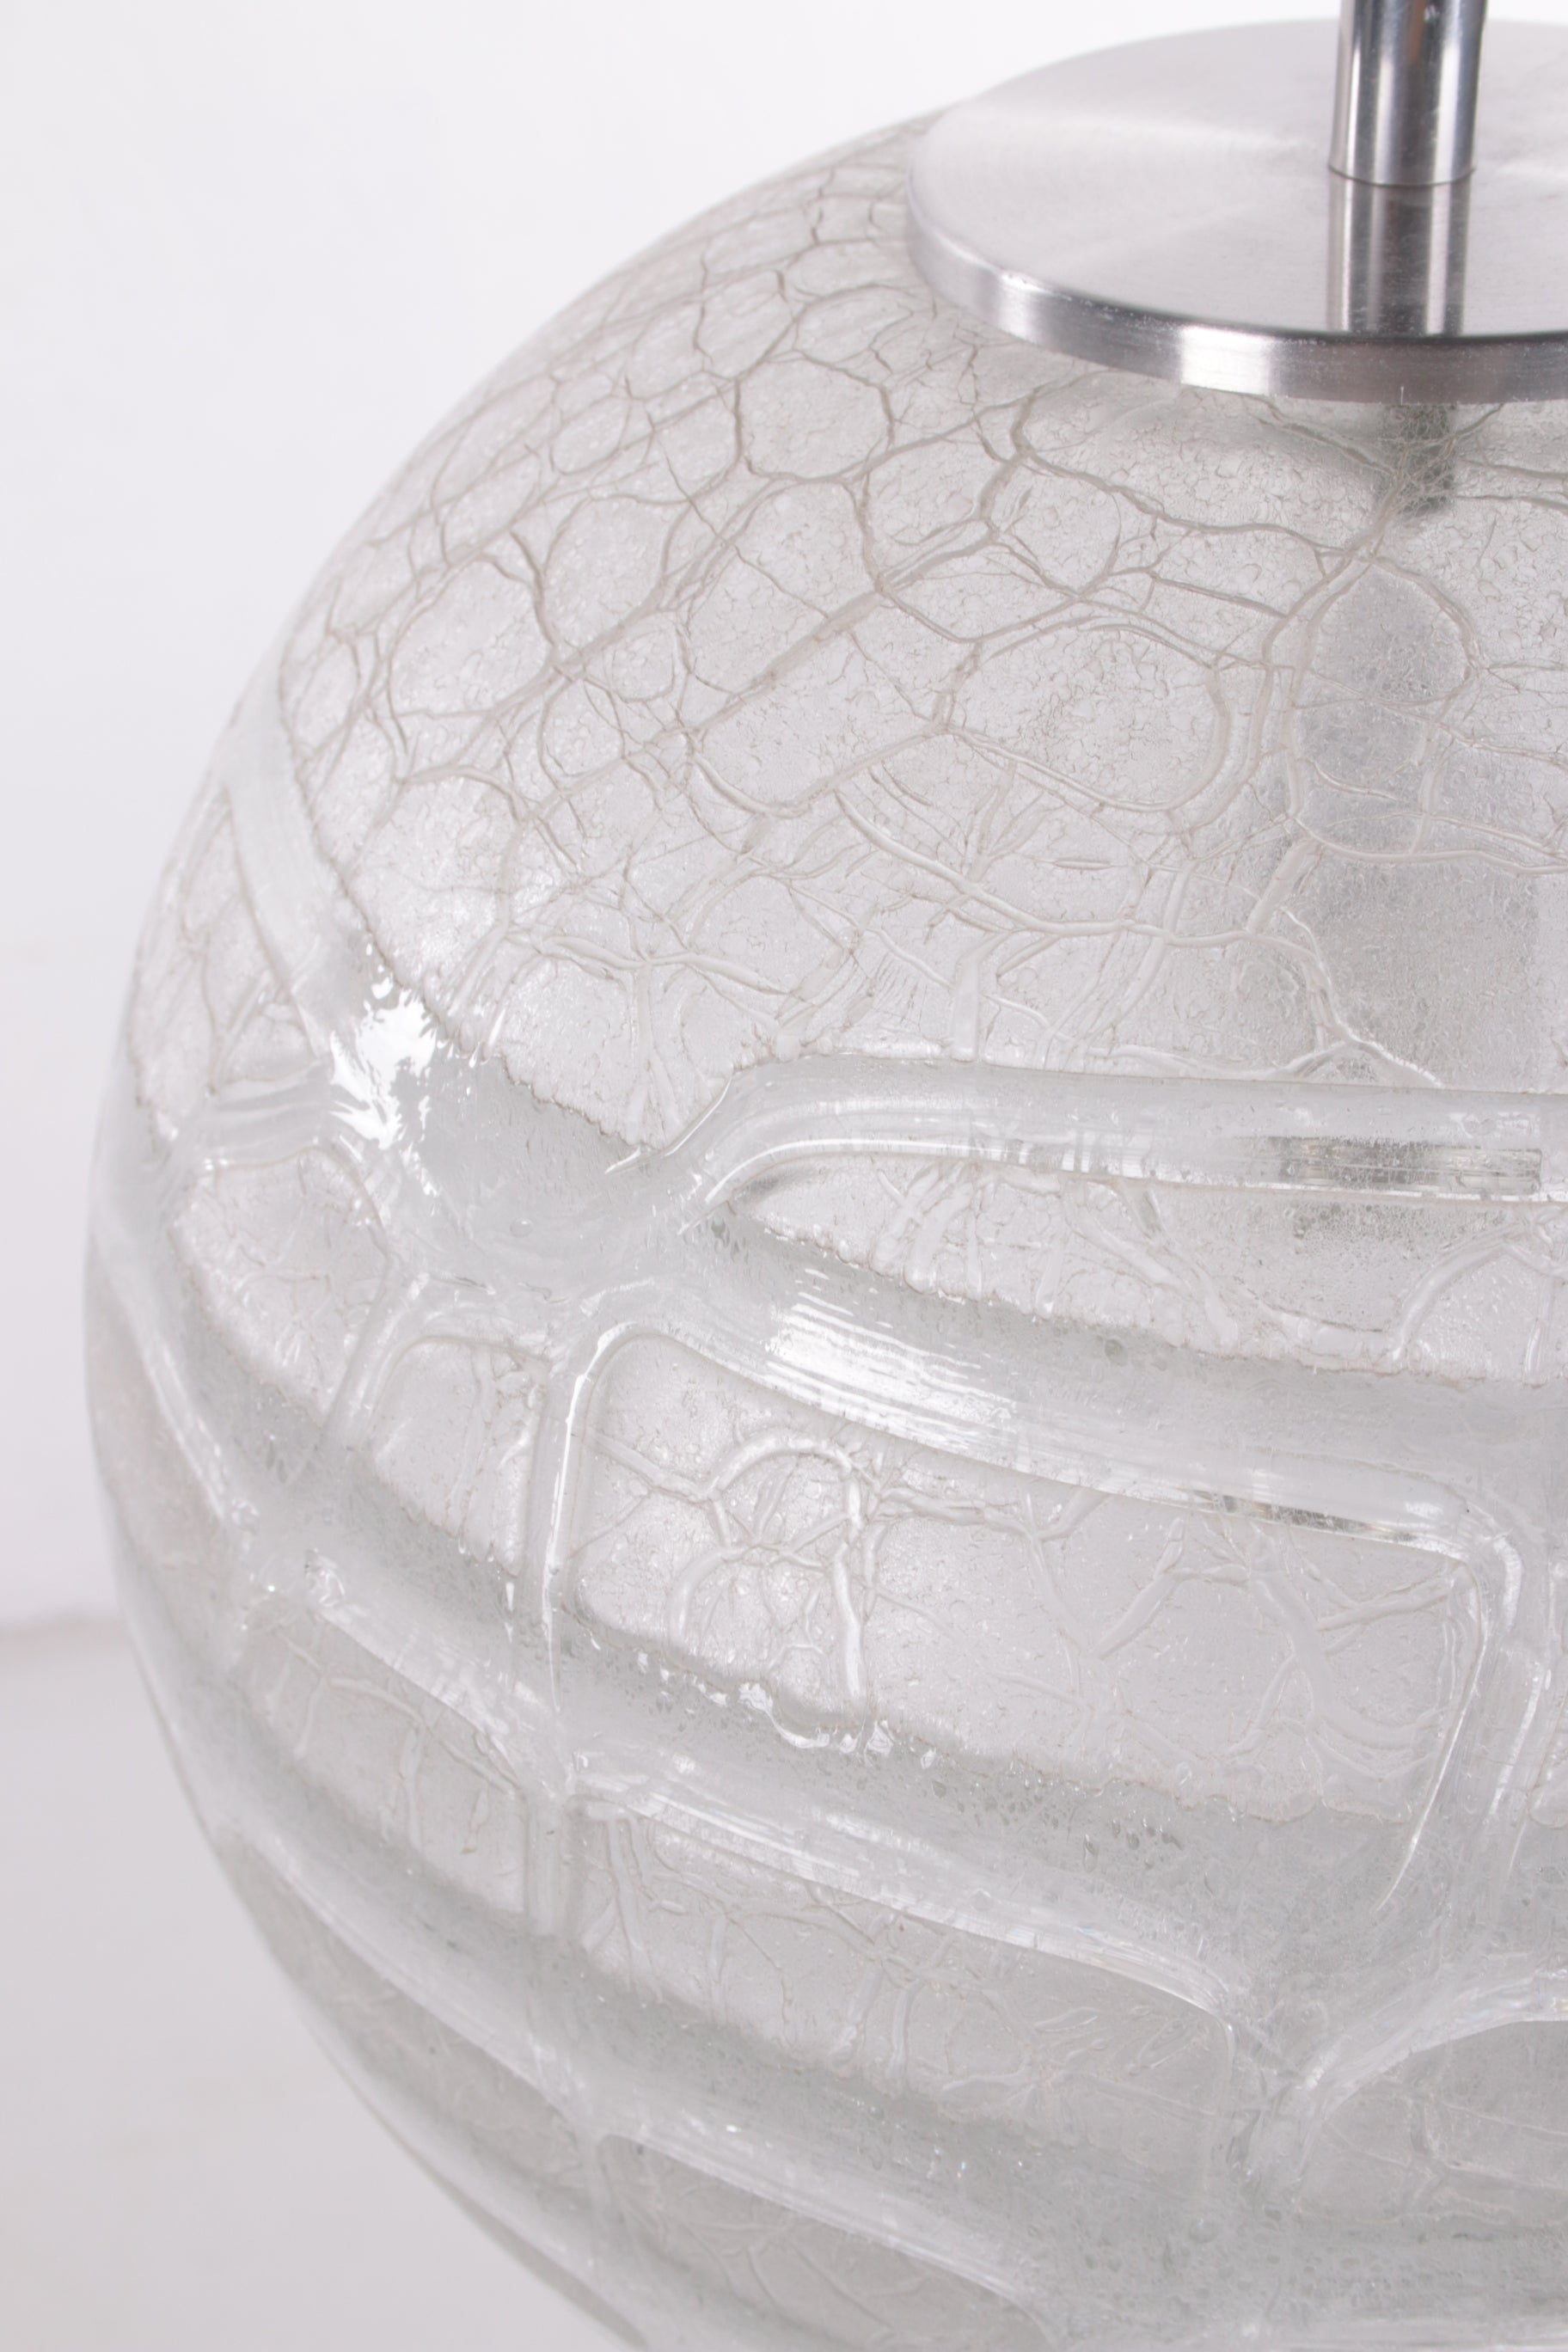 Glazen Globe Hanglamp van Doria Leuchten, 1970s detail glas